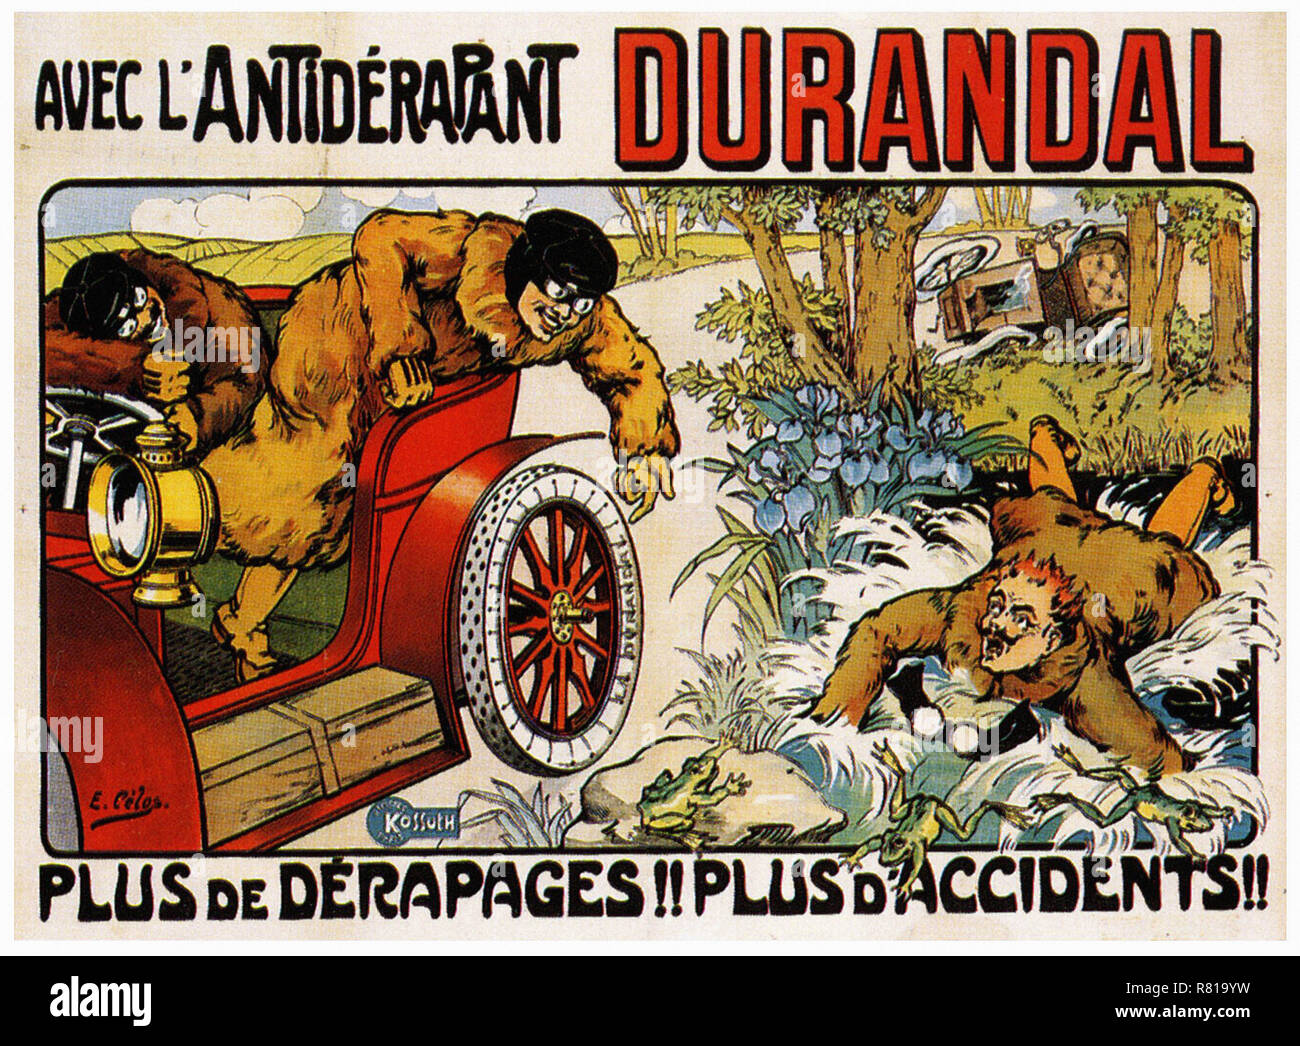 Durandal Anti Skid Pneus - Vintage Car's affiche publicitaire Banque D'Images